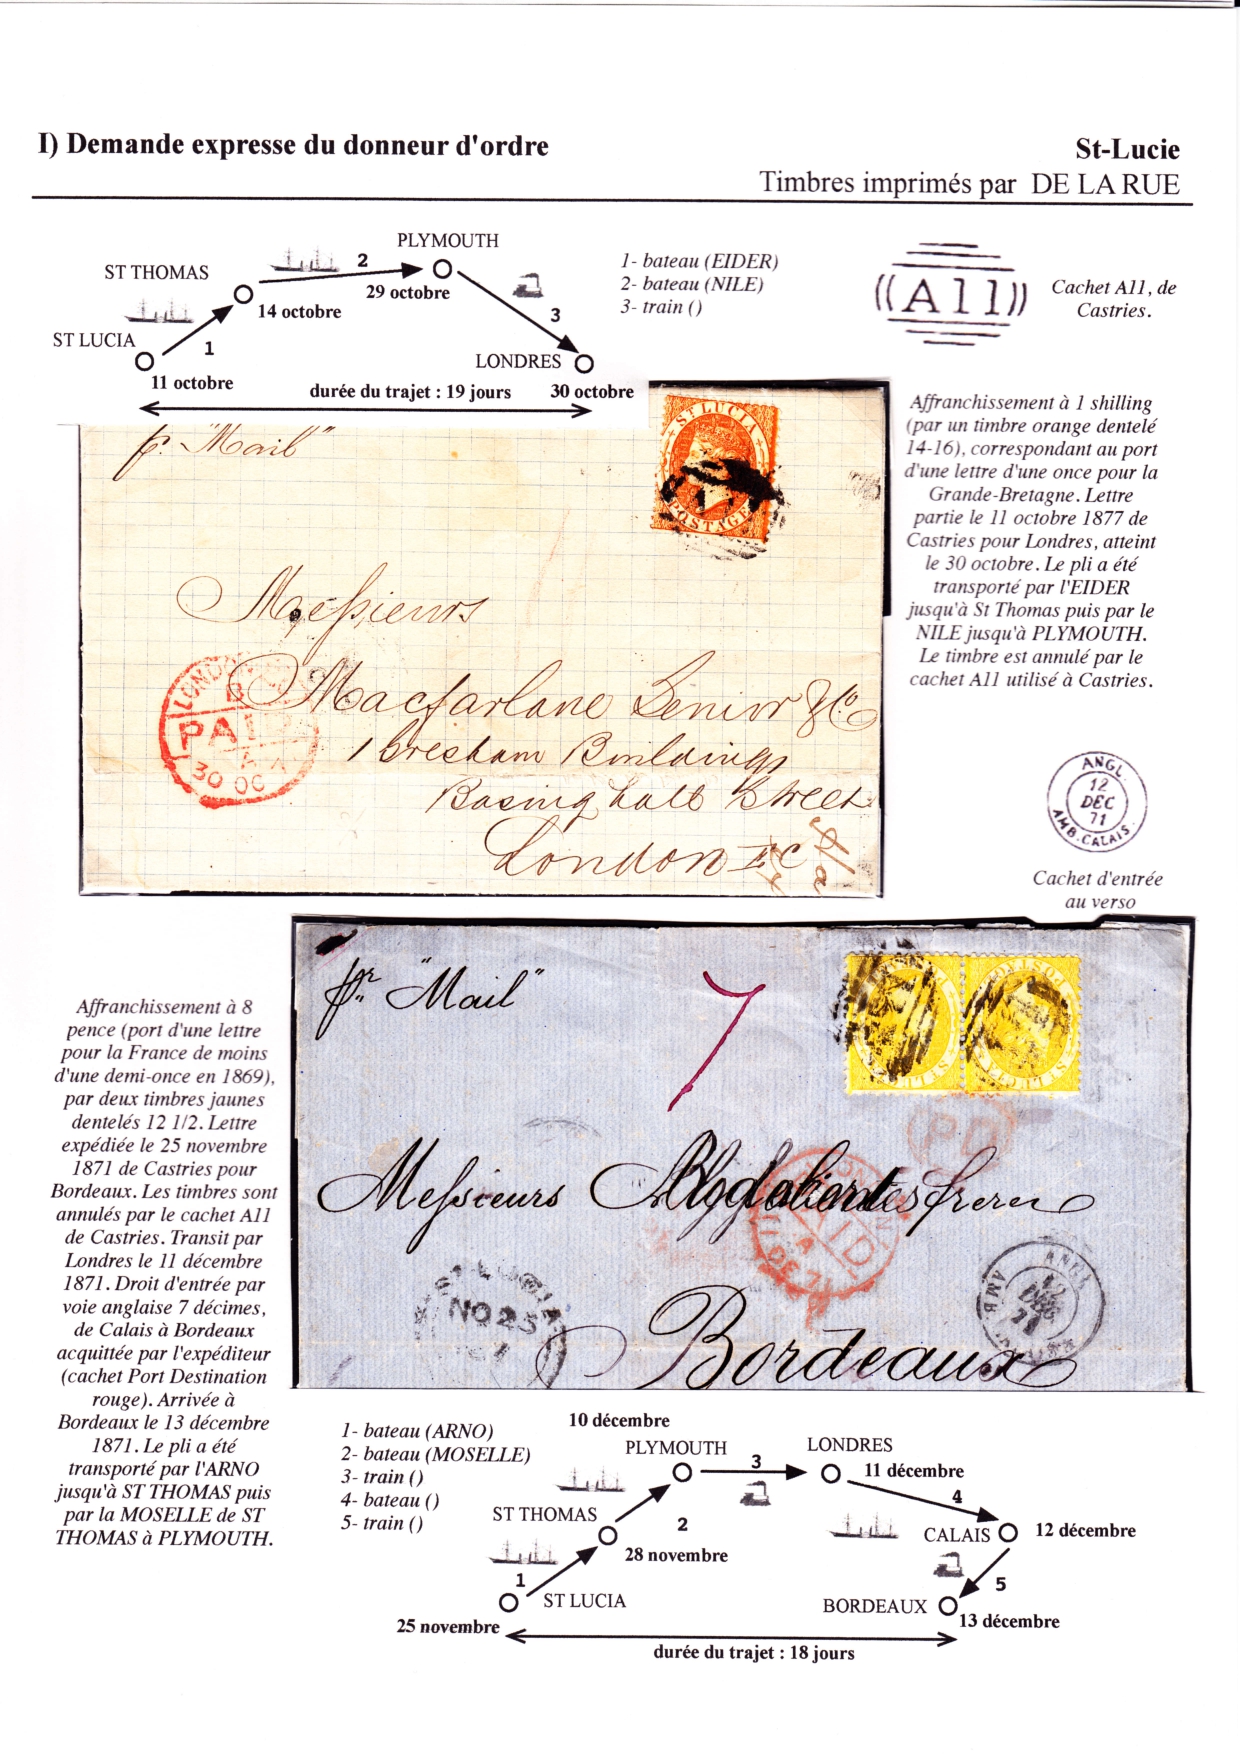 Les d��buts des timbres sans valeur faciale apparente p. 24